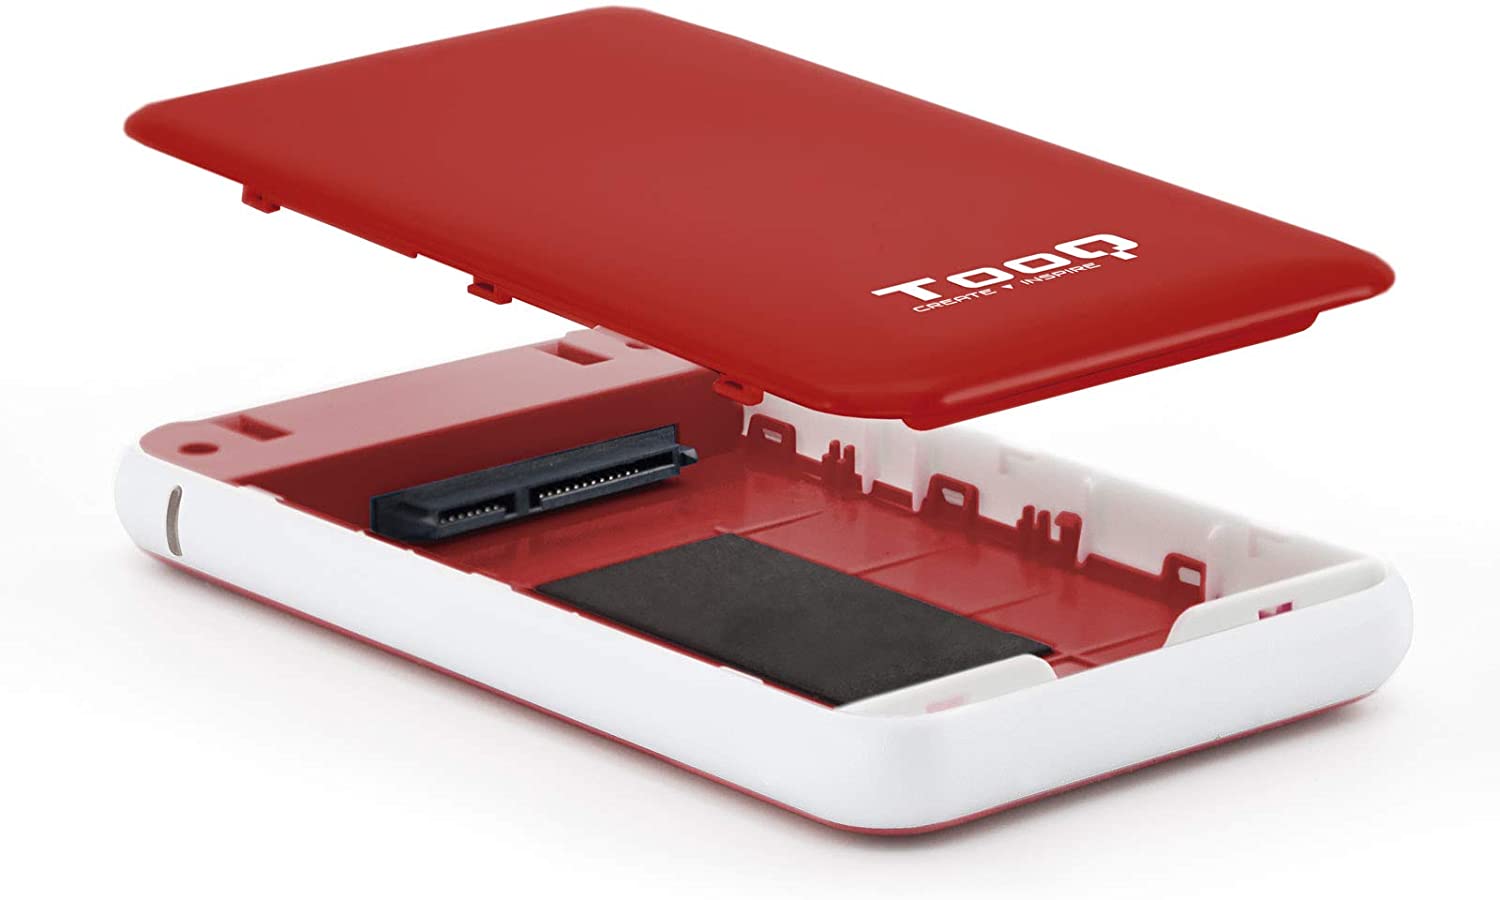 Tooq Boîtier Externe HDD/SDD 2.5" jusqu'à 9.5mm SATA USB 3.0/3.1 Gen 1 - Sans Vis - Couleur Rouge/Blanc